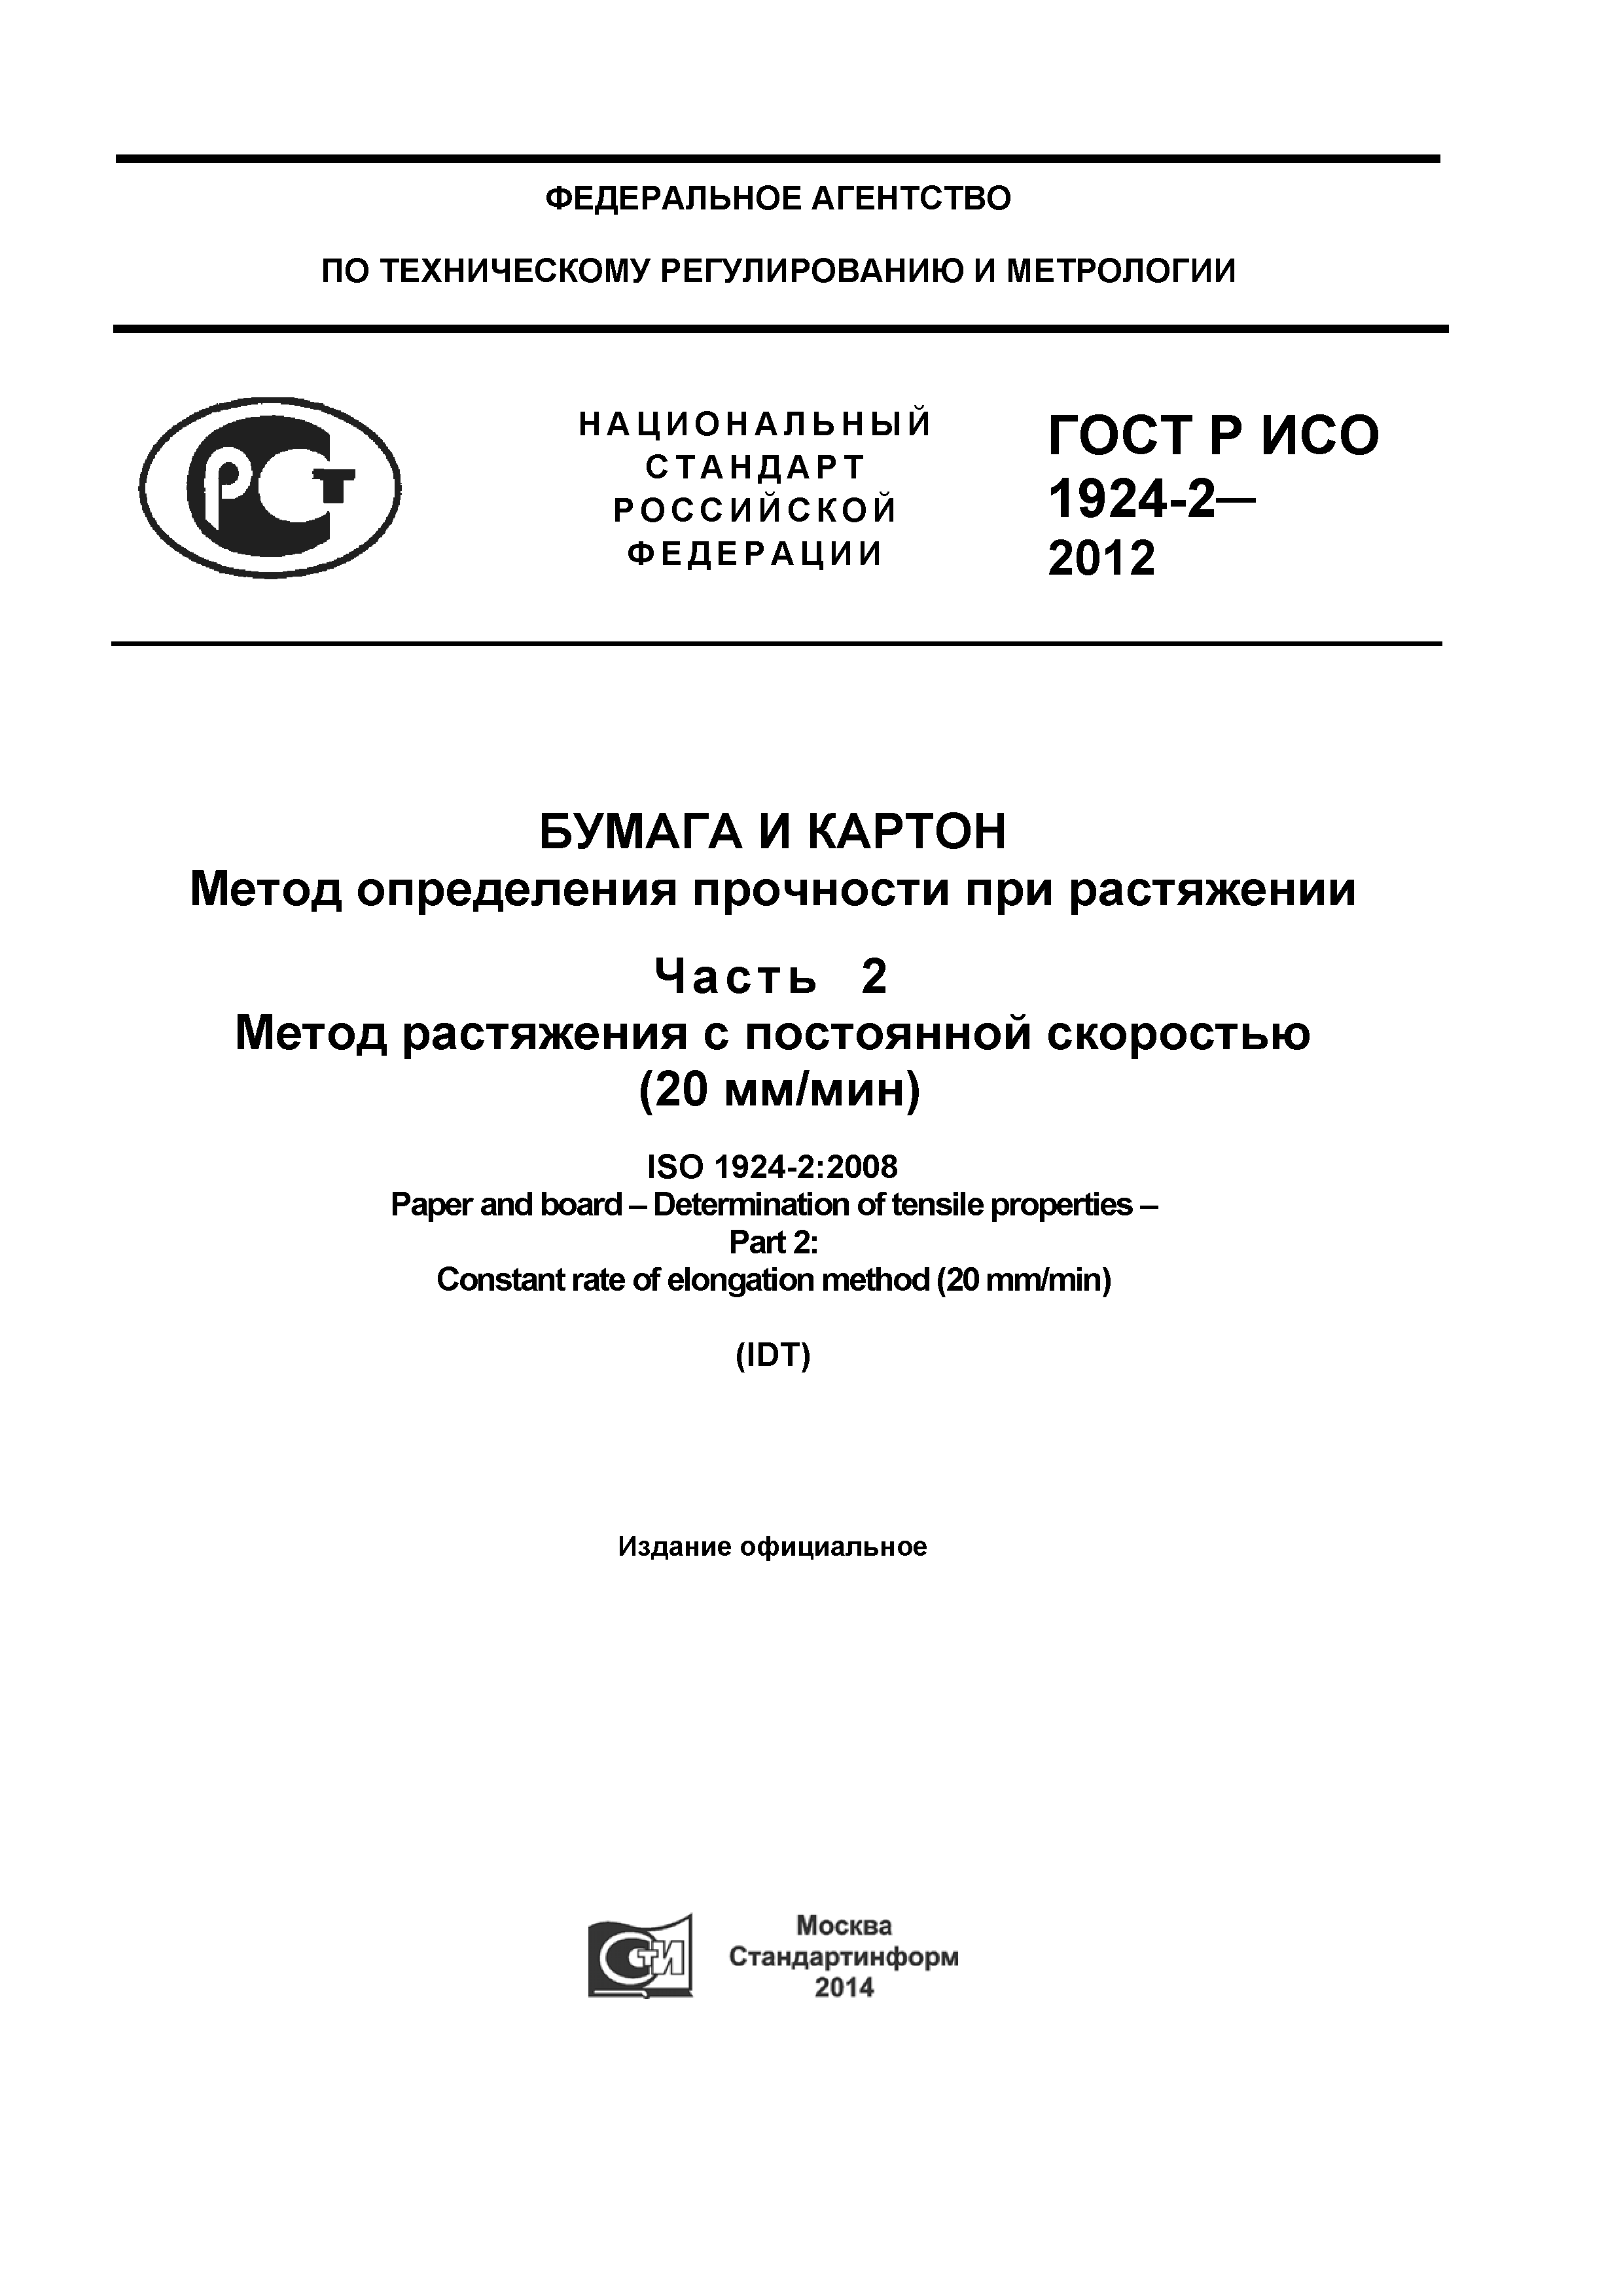 ГОСТ Р ИСО 1924-2-2012